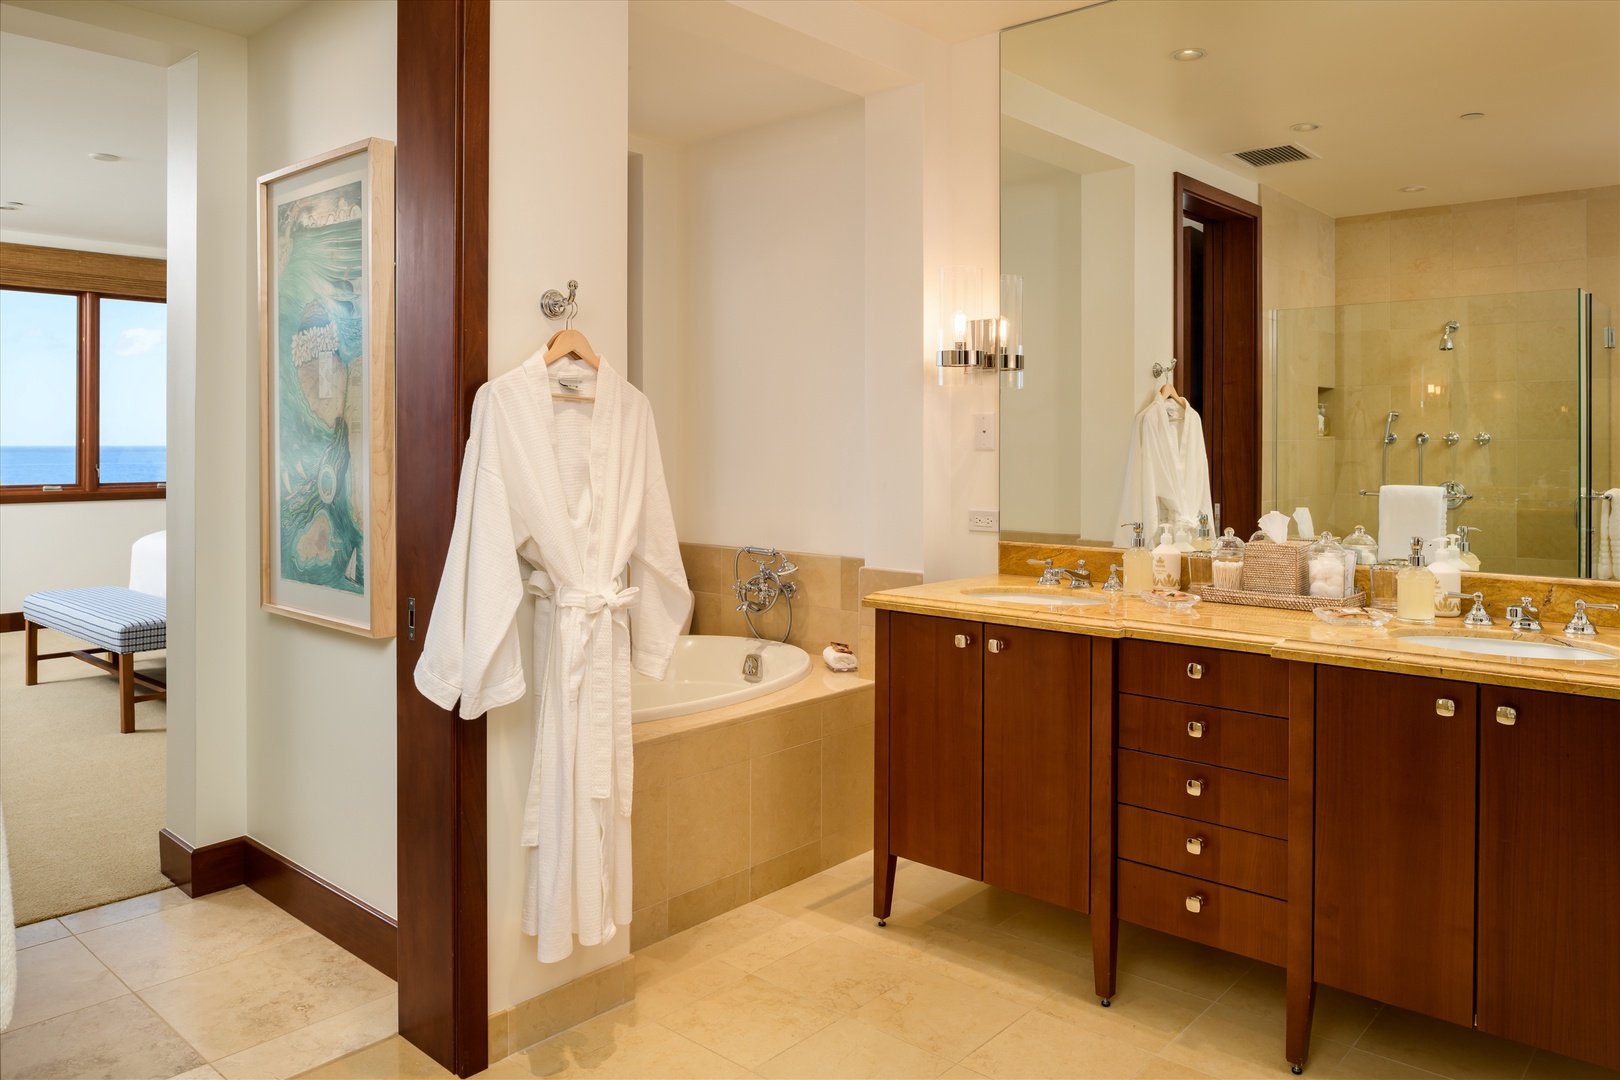 Wailea Vacation Rentals, Blue Ocean Suite H401 at Wailea Beach Villas* - Ocean View Master Bedroom Bathroom